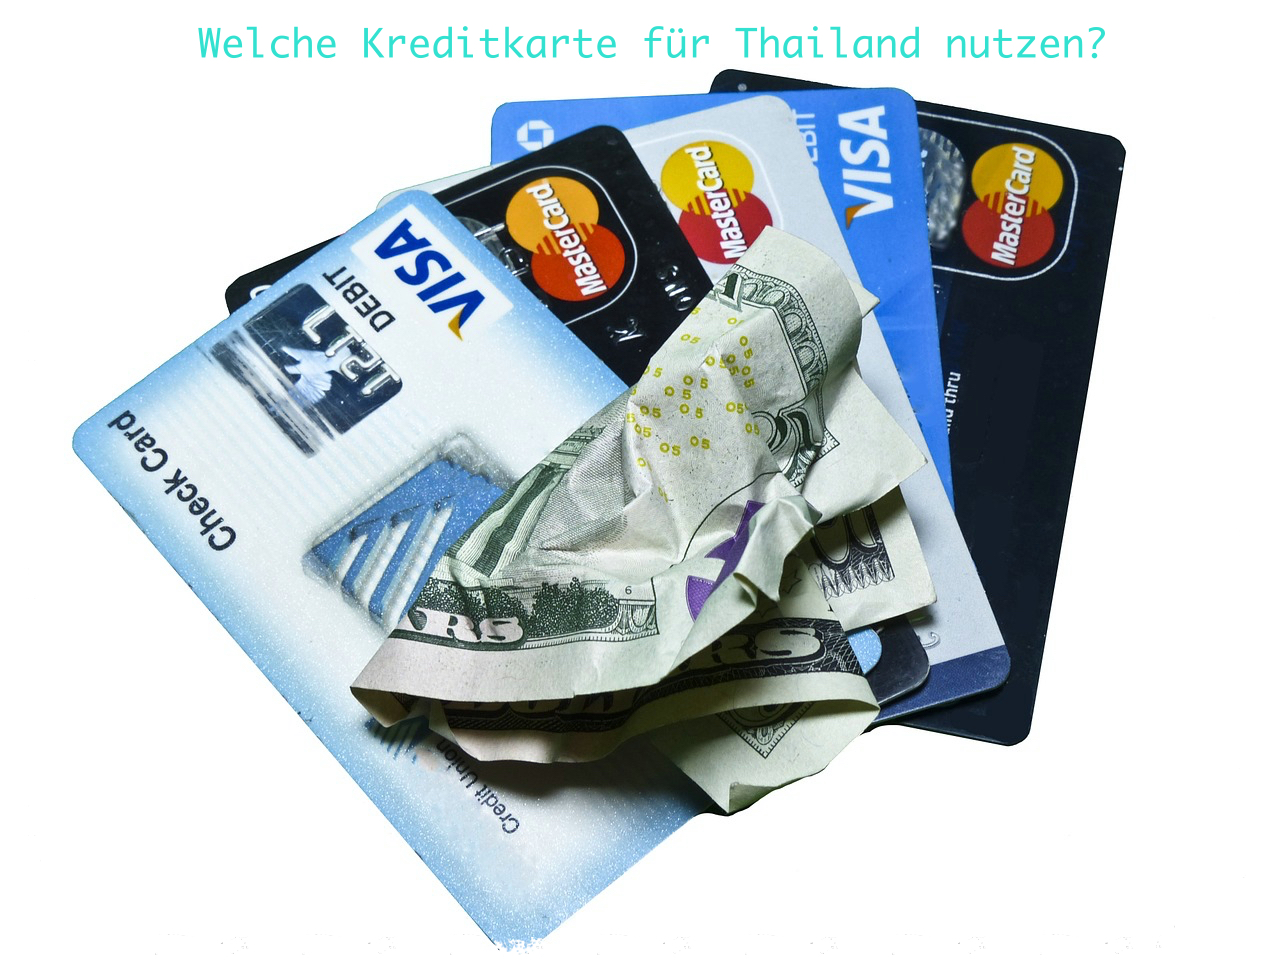 Welche Kreditkarte für Thailand nutzen?